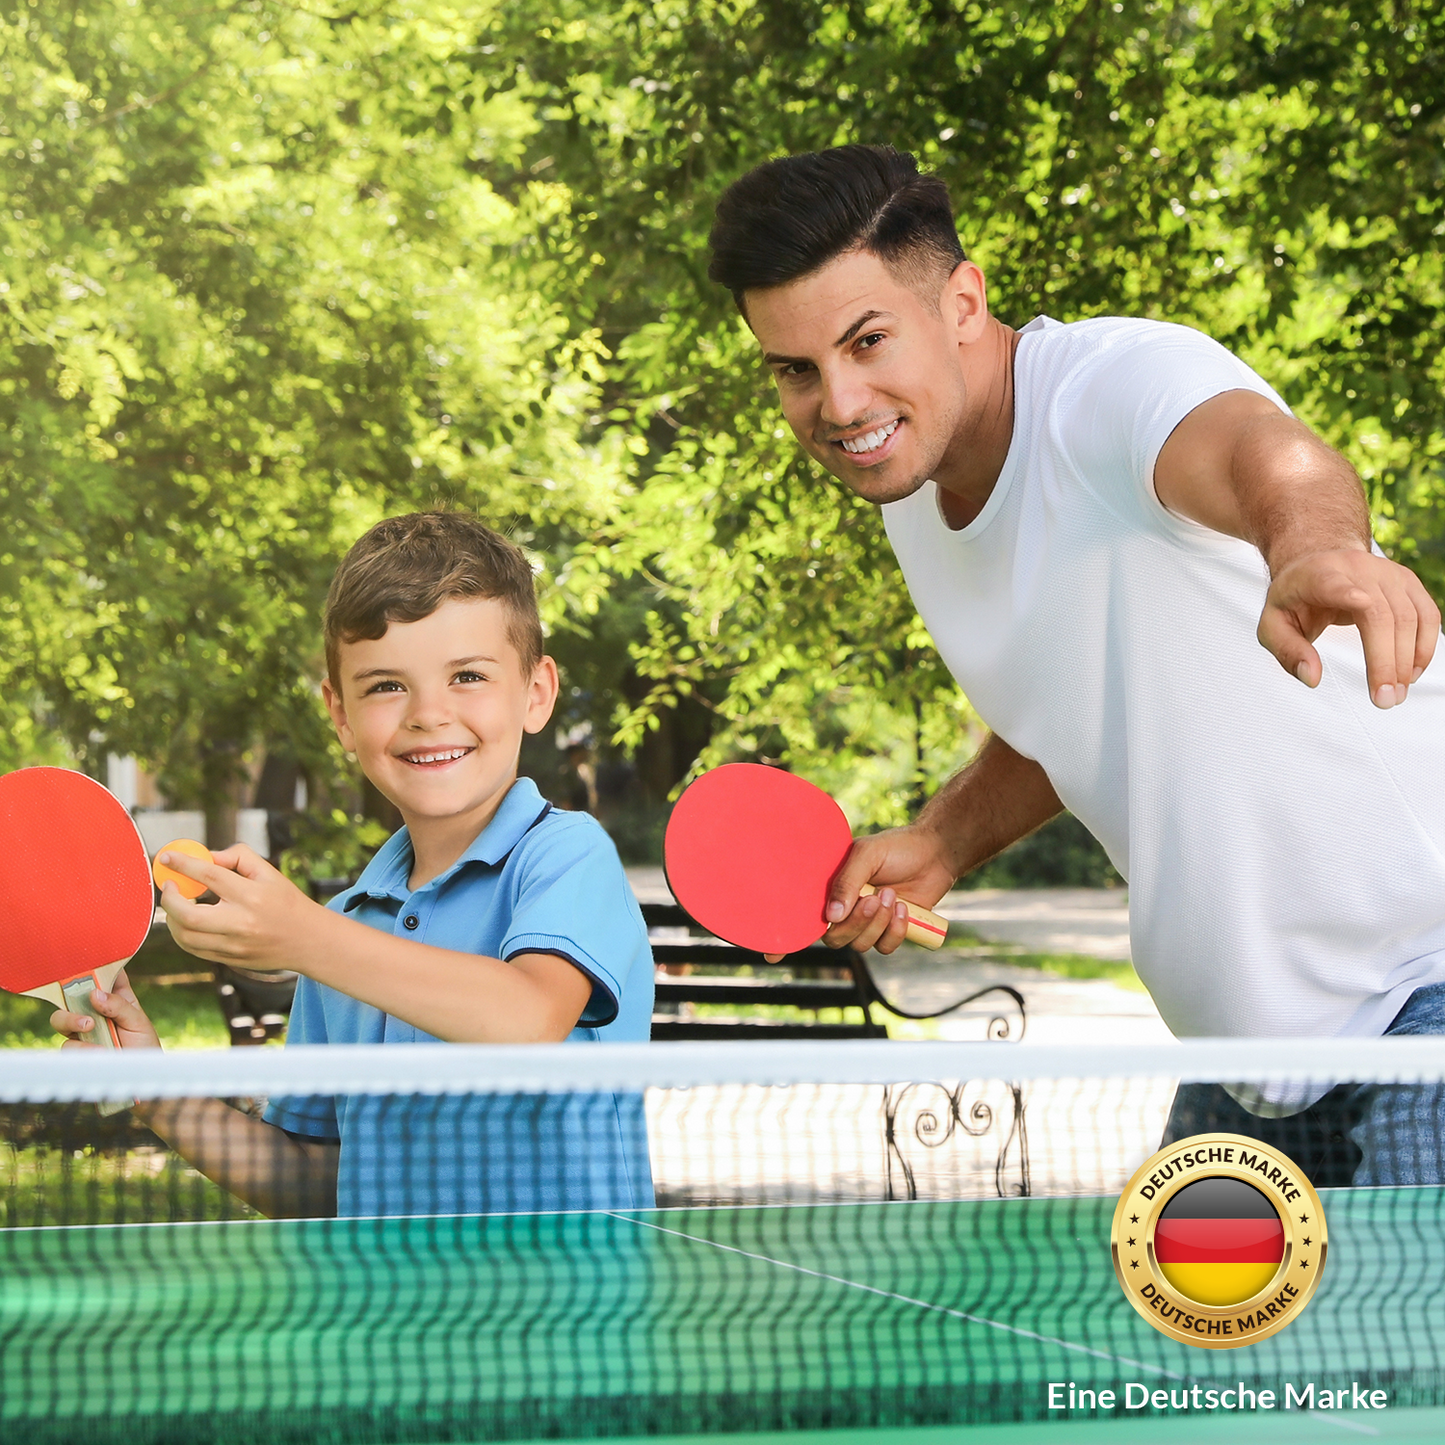 Schutzhülle Tischtennisplatte - 180 x 160 x 55 cm - Abdeckhaube Tischtennis Outdoor - wasserdicht - mit Reißverschluss - grün